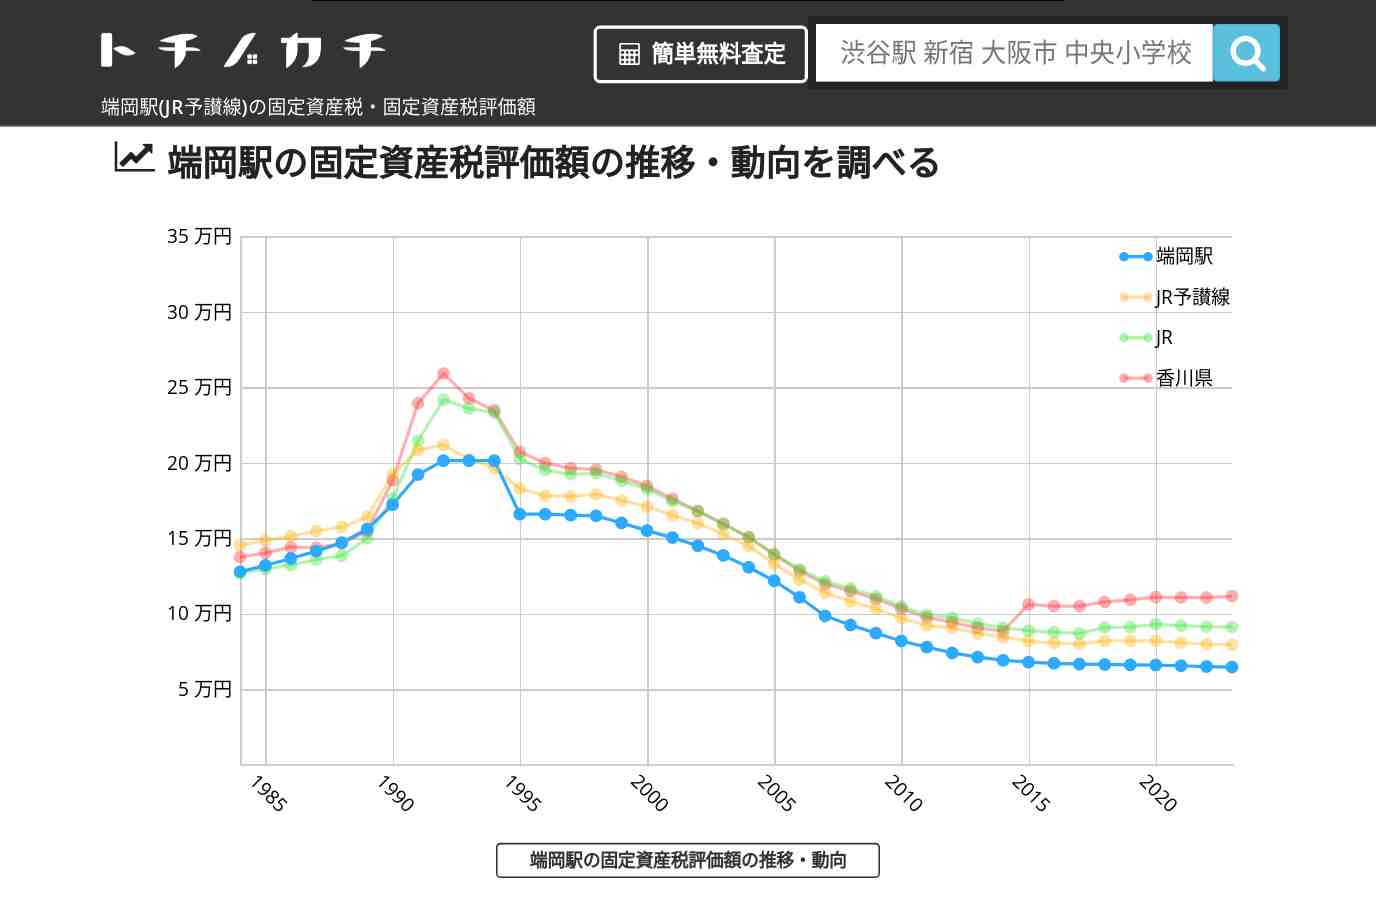 端岡駅(JR予讃線)の固定資産税・固定資産税評価額 | トチノカチ